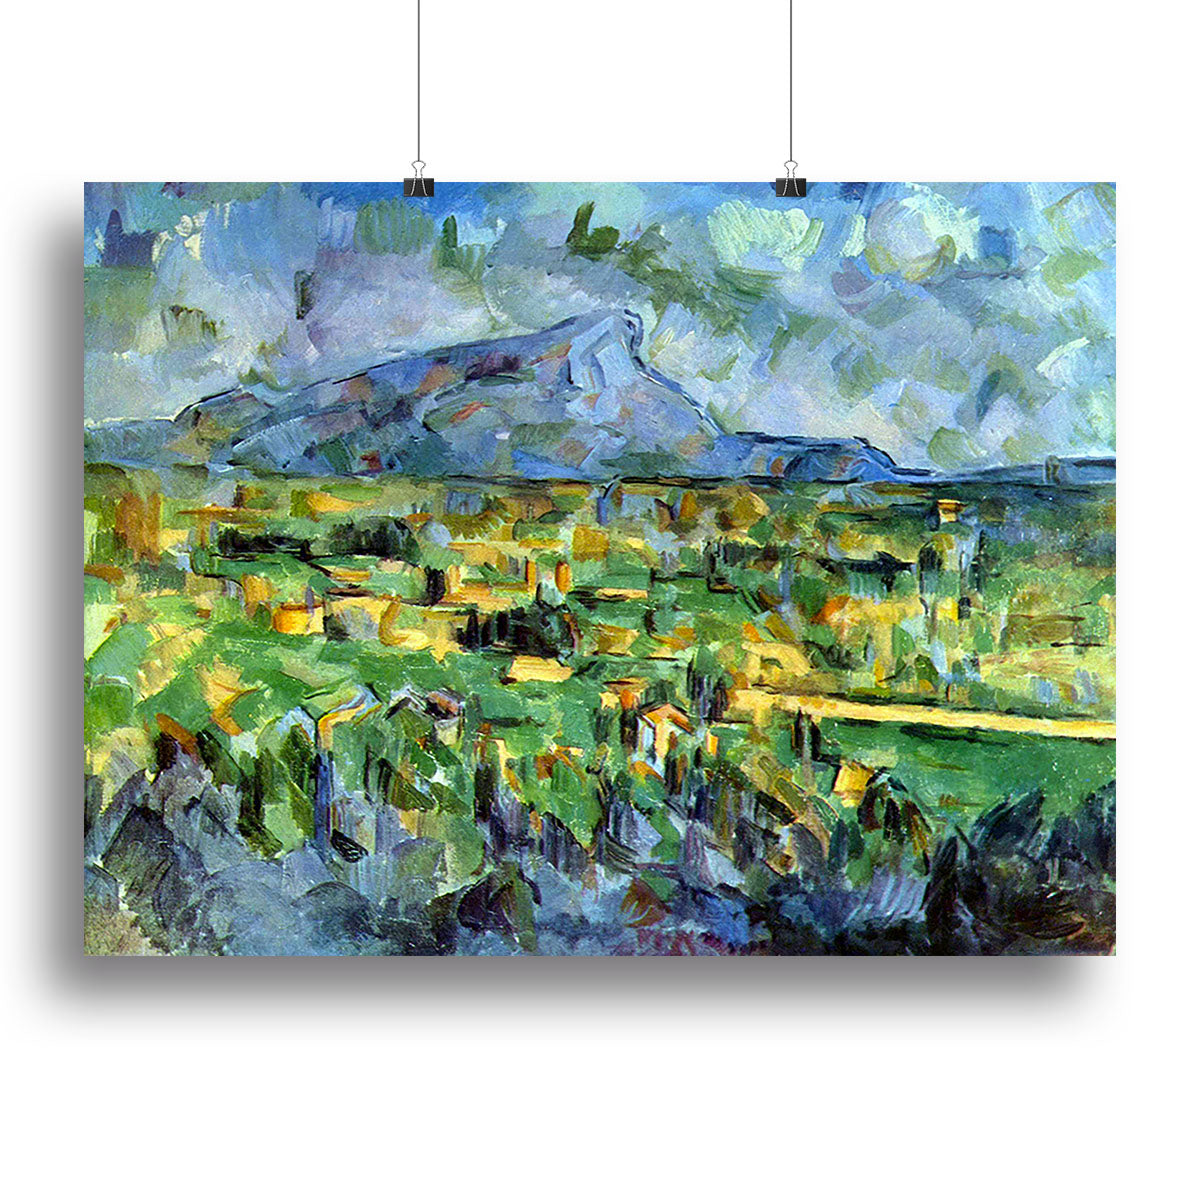 Mont Sainte-Victoire by Cezanne Canvas Print or Poster - Canvas Art Rocks - 2